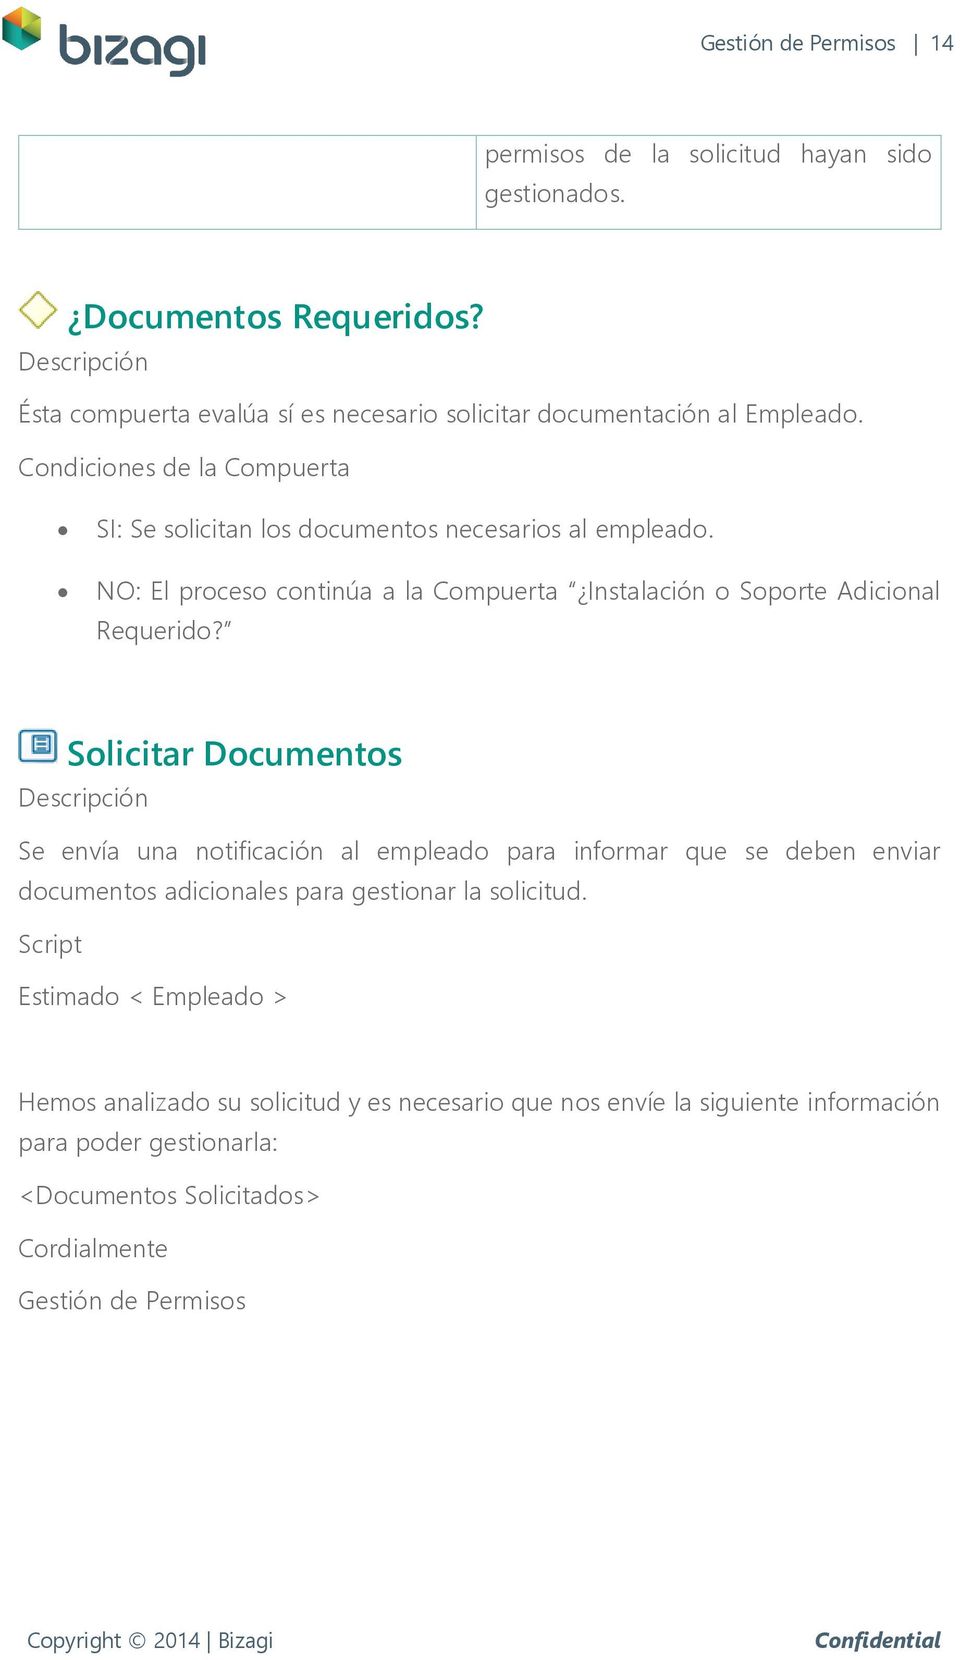 Solicitar Documentos Se envía una notificación al empleado para informar que se deben enviar documentos adicionales para gestionar la solicitud.